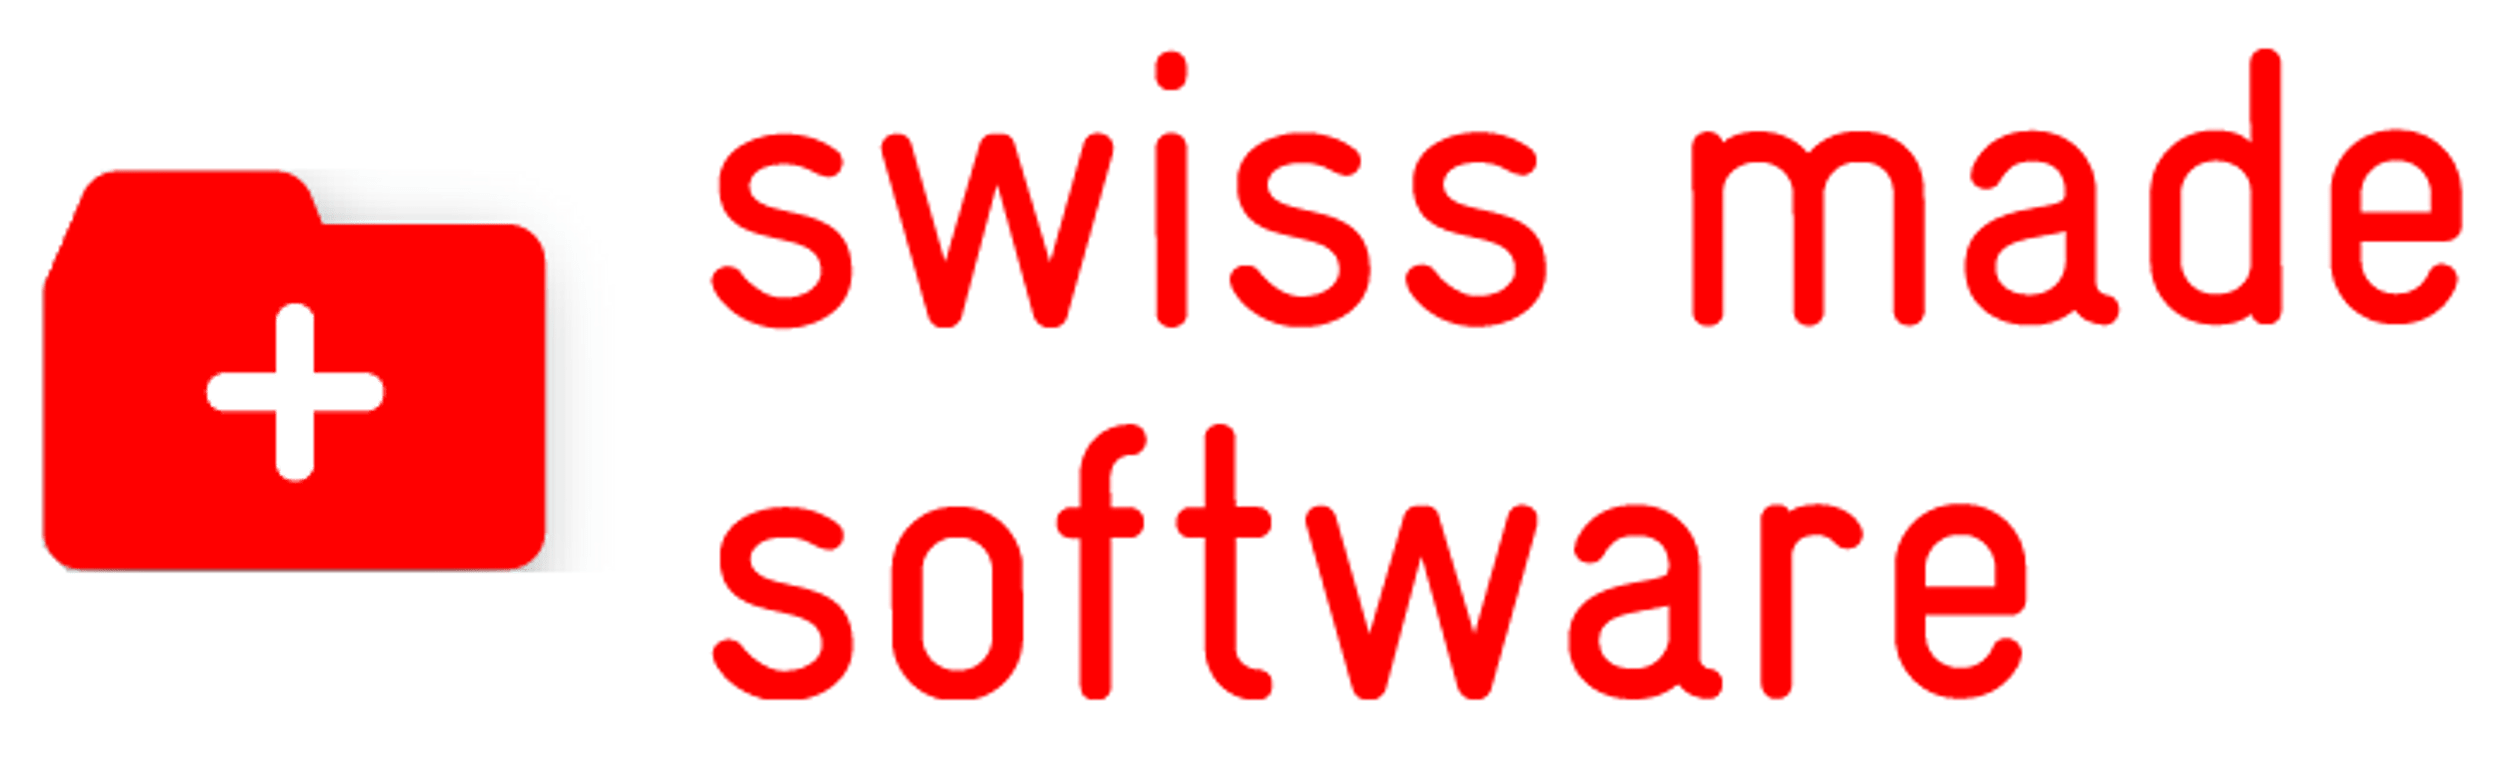 swiss made software logo